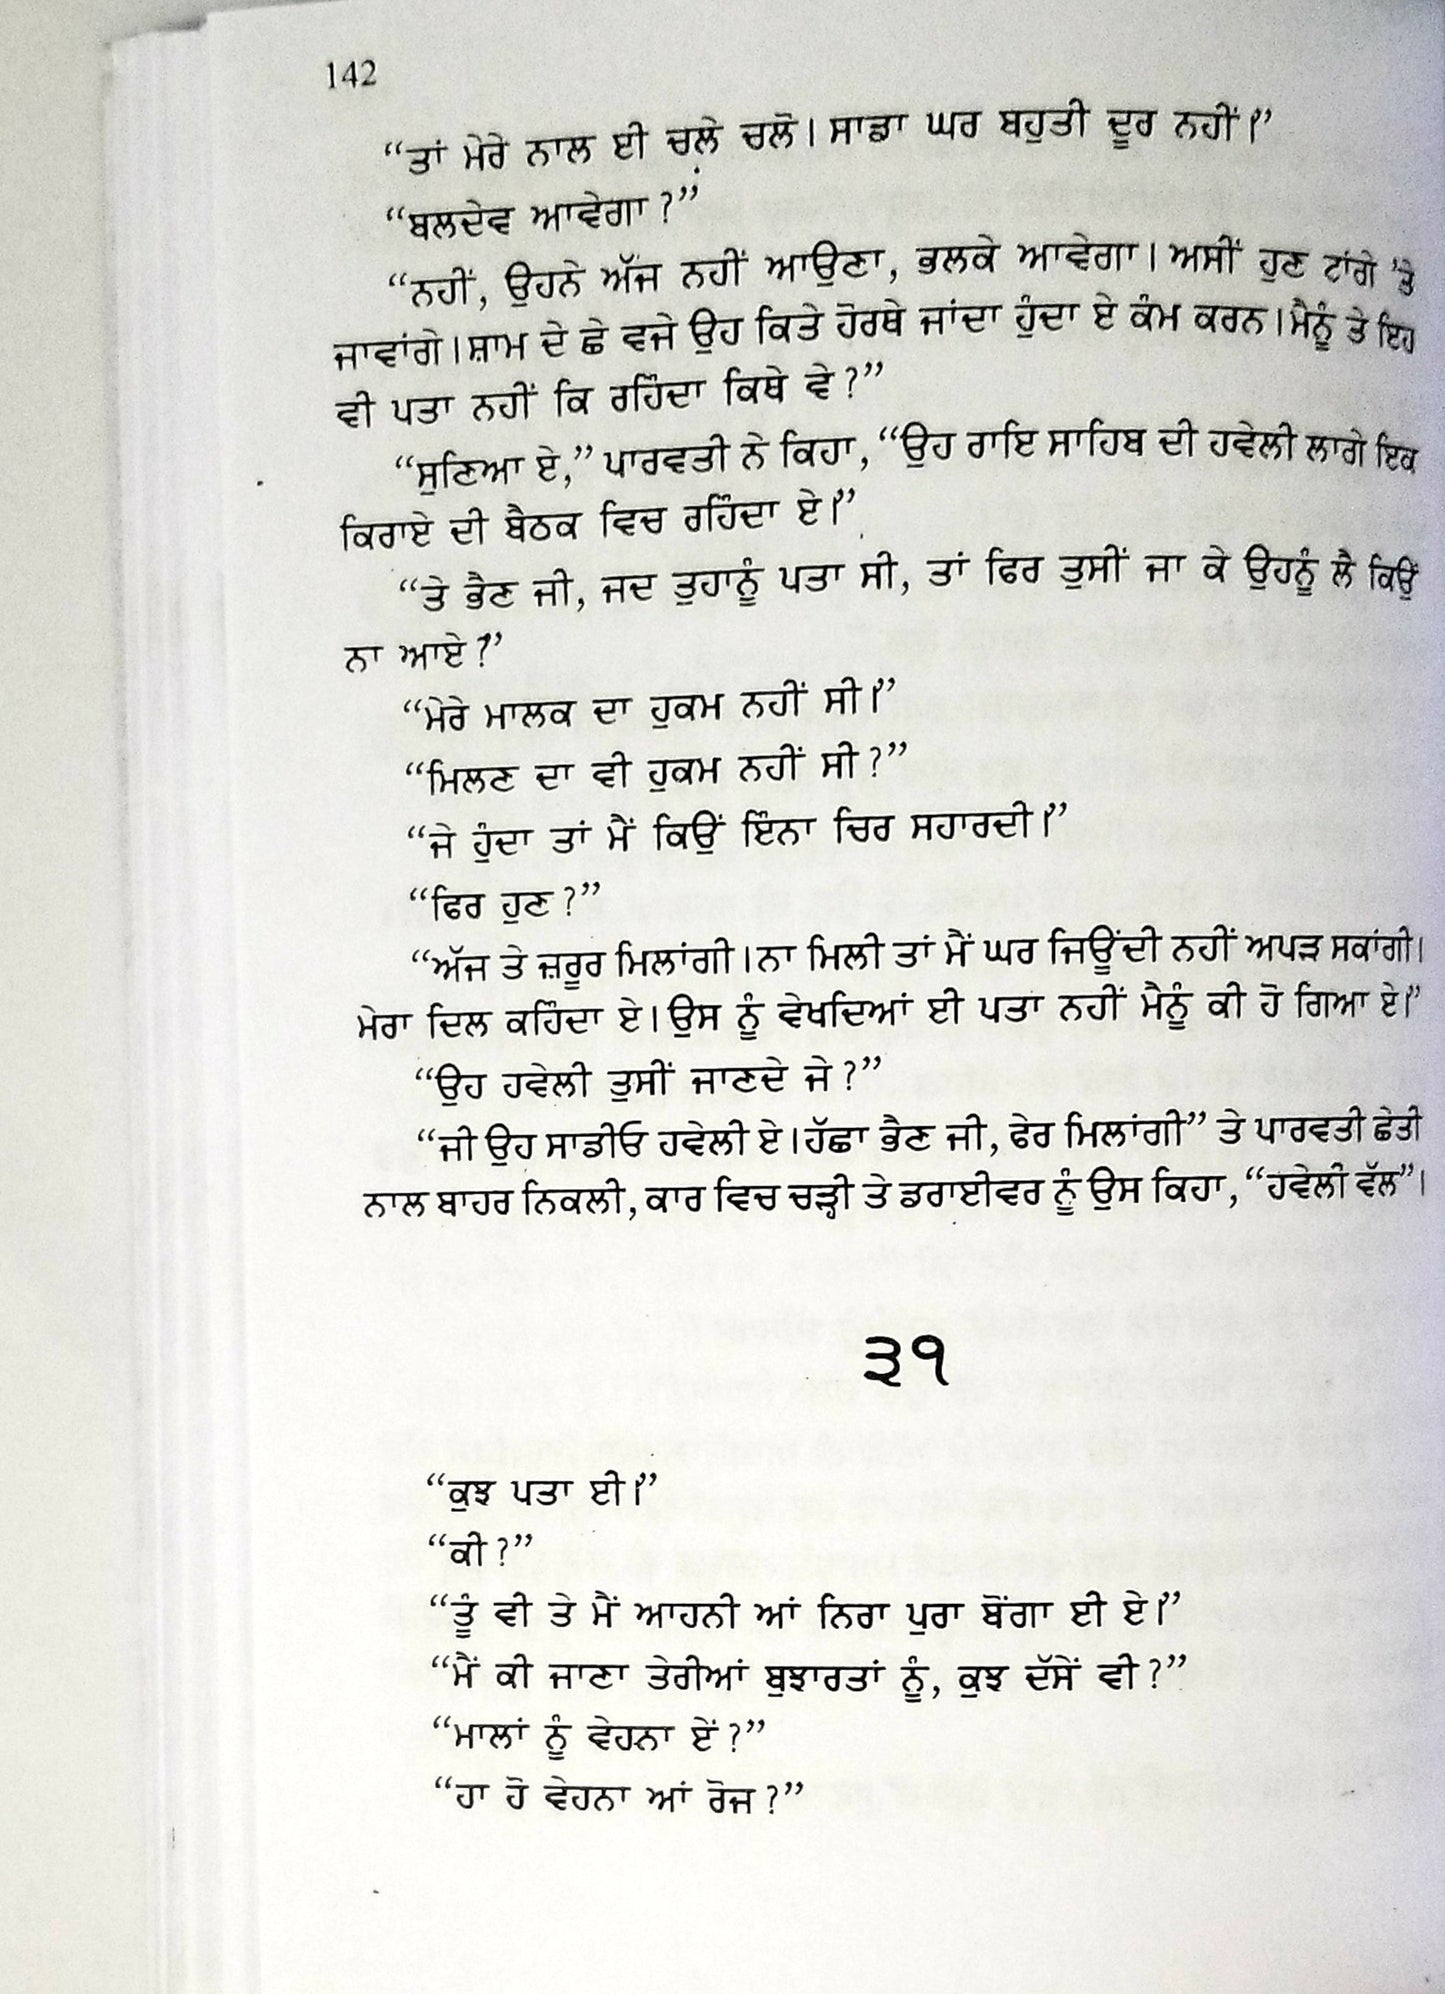 ਗਰੀਬ ਦੀ ਦੁਨੀਆਂ  - Graeeb Di Duniya by Nanak Singh